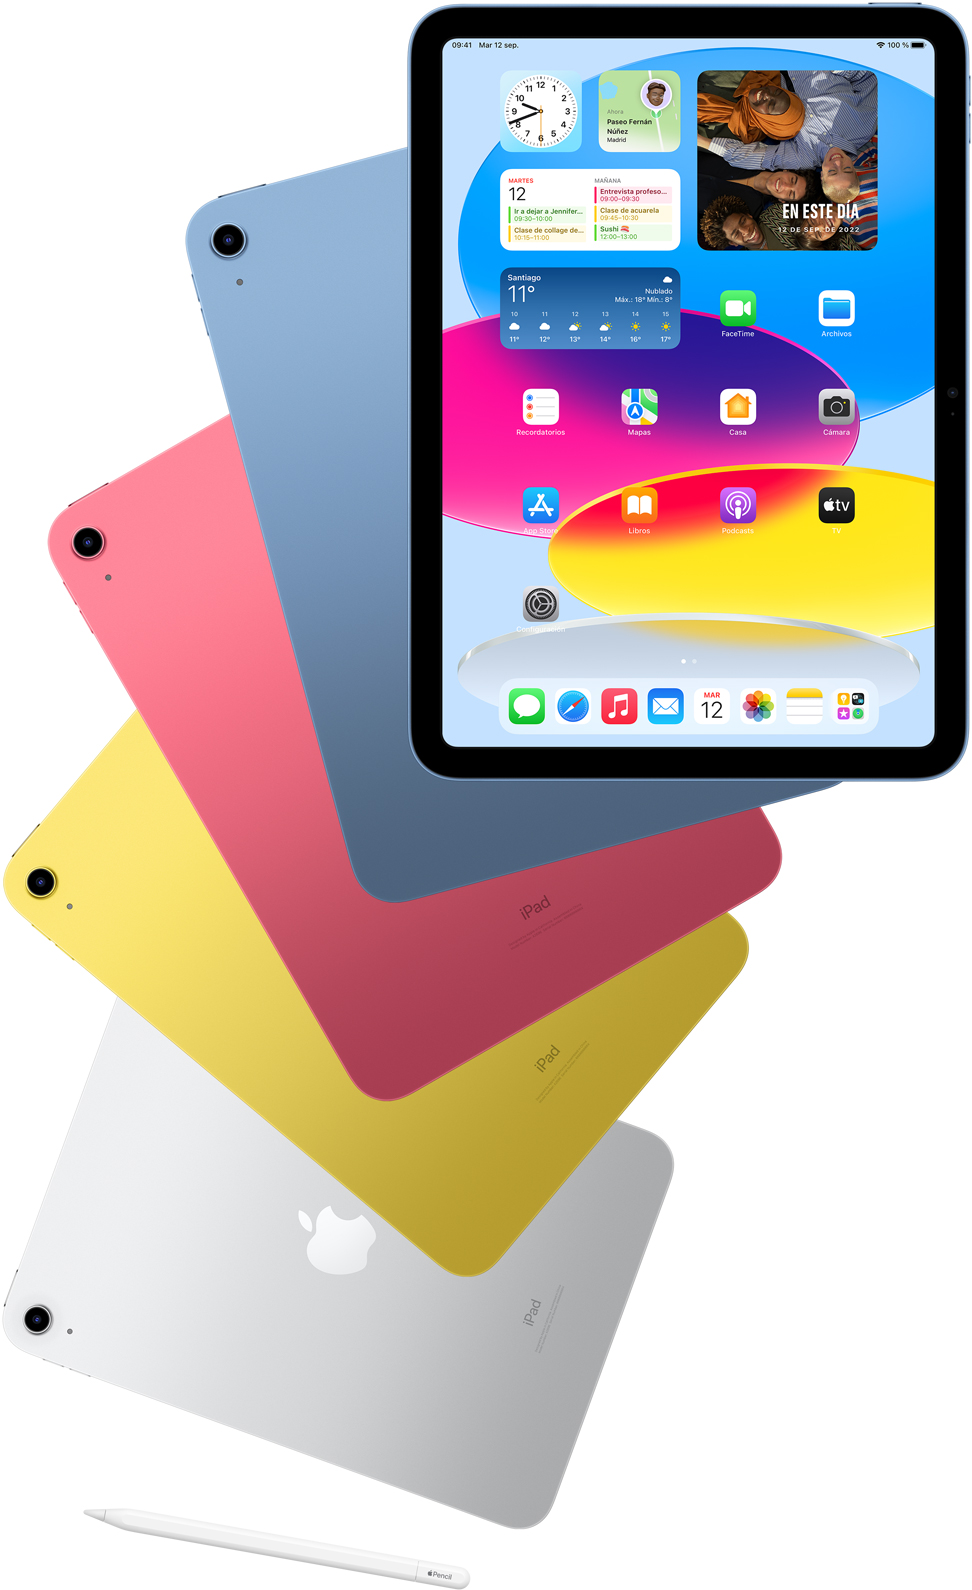 Vista frontal de un iPad con la pantalla de inicio y, por detrás, otros dispositivos iPad en azul, rosado, amarillo y color plata. Se muestra un Apple Pencil cerca de los distintos modelos de iPad.